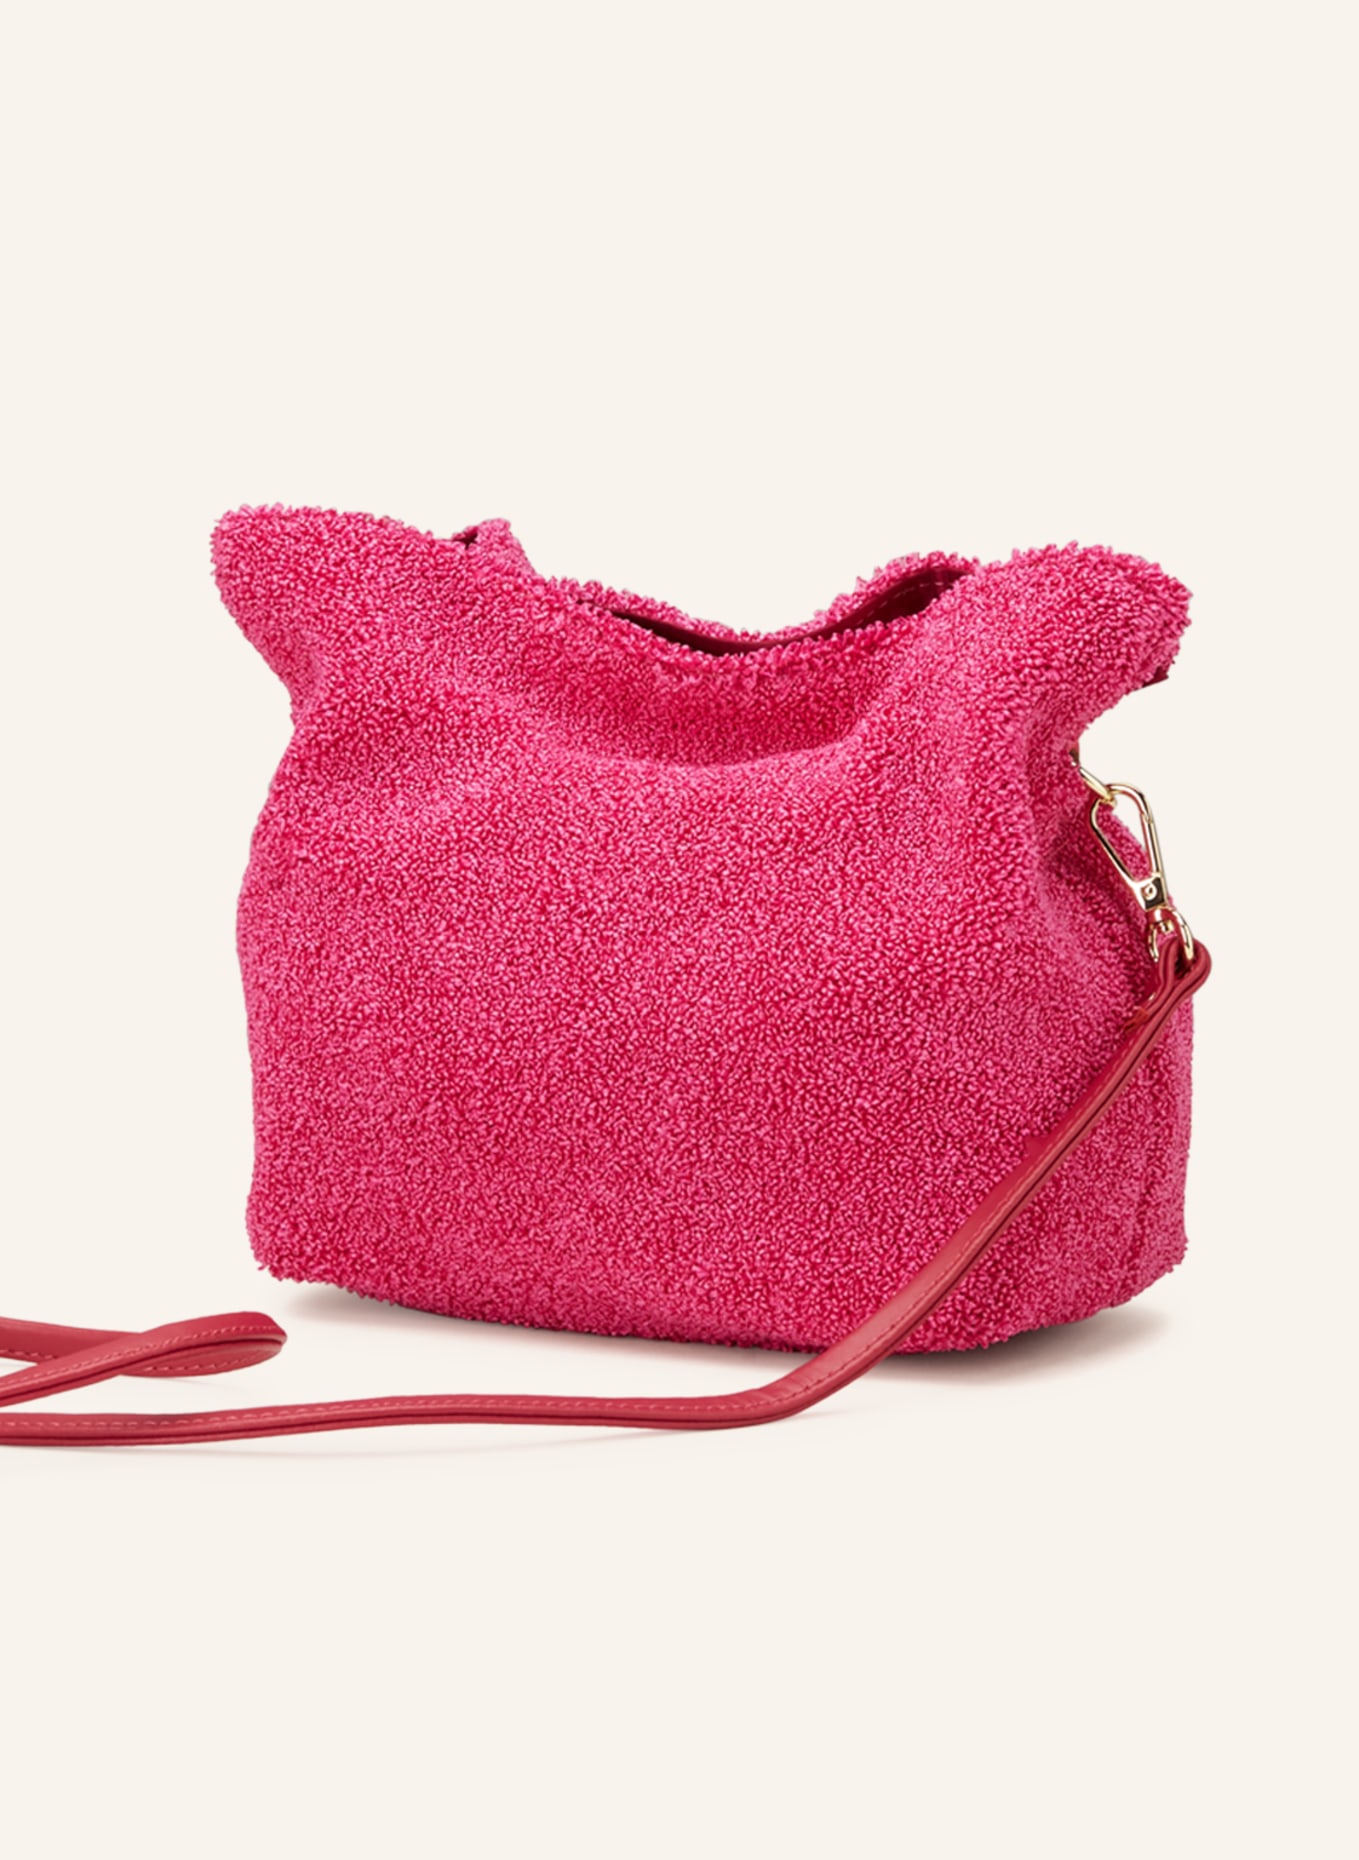 ViaMailBag Handbag ARUBA SOFT, Color: PINK (Image 2)